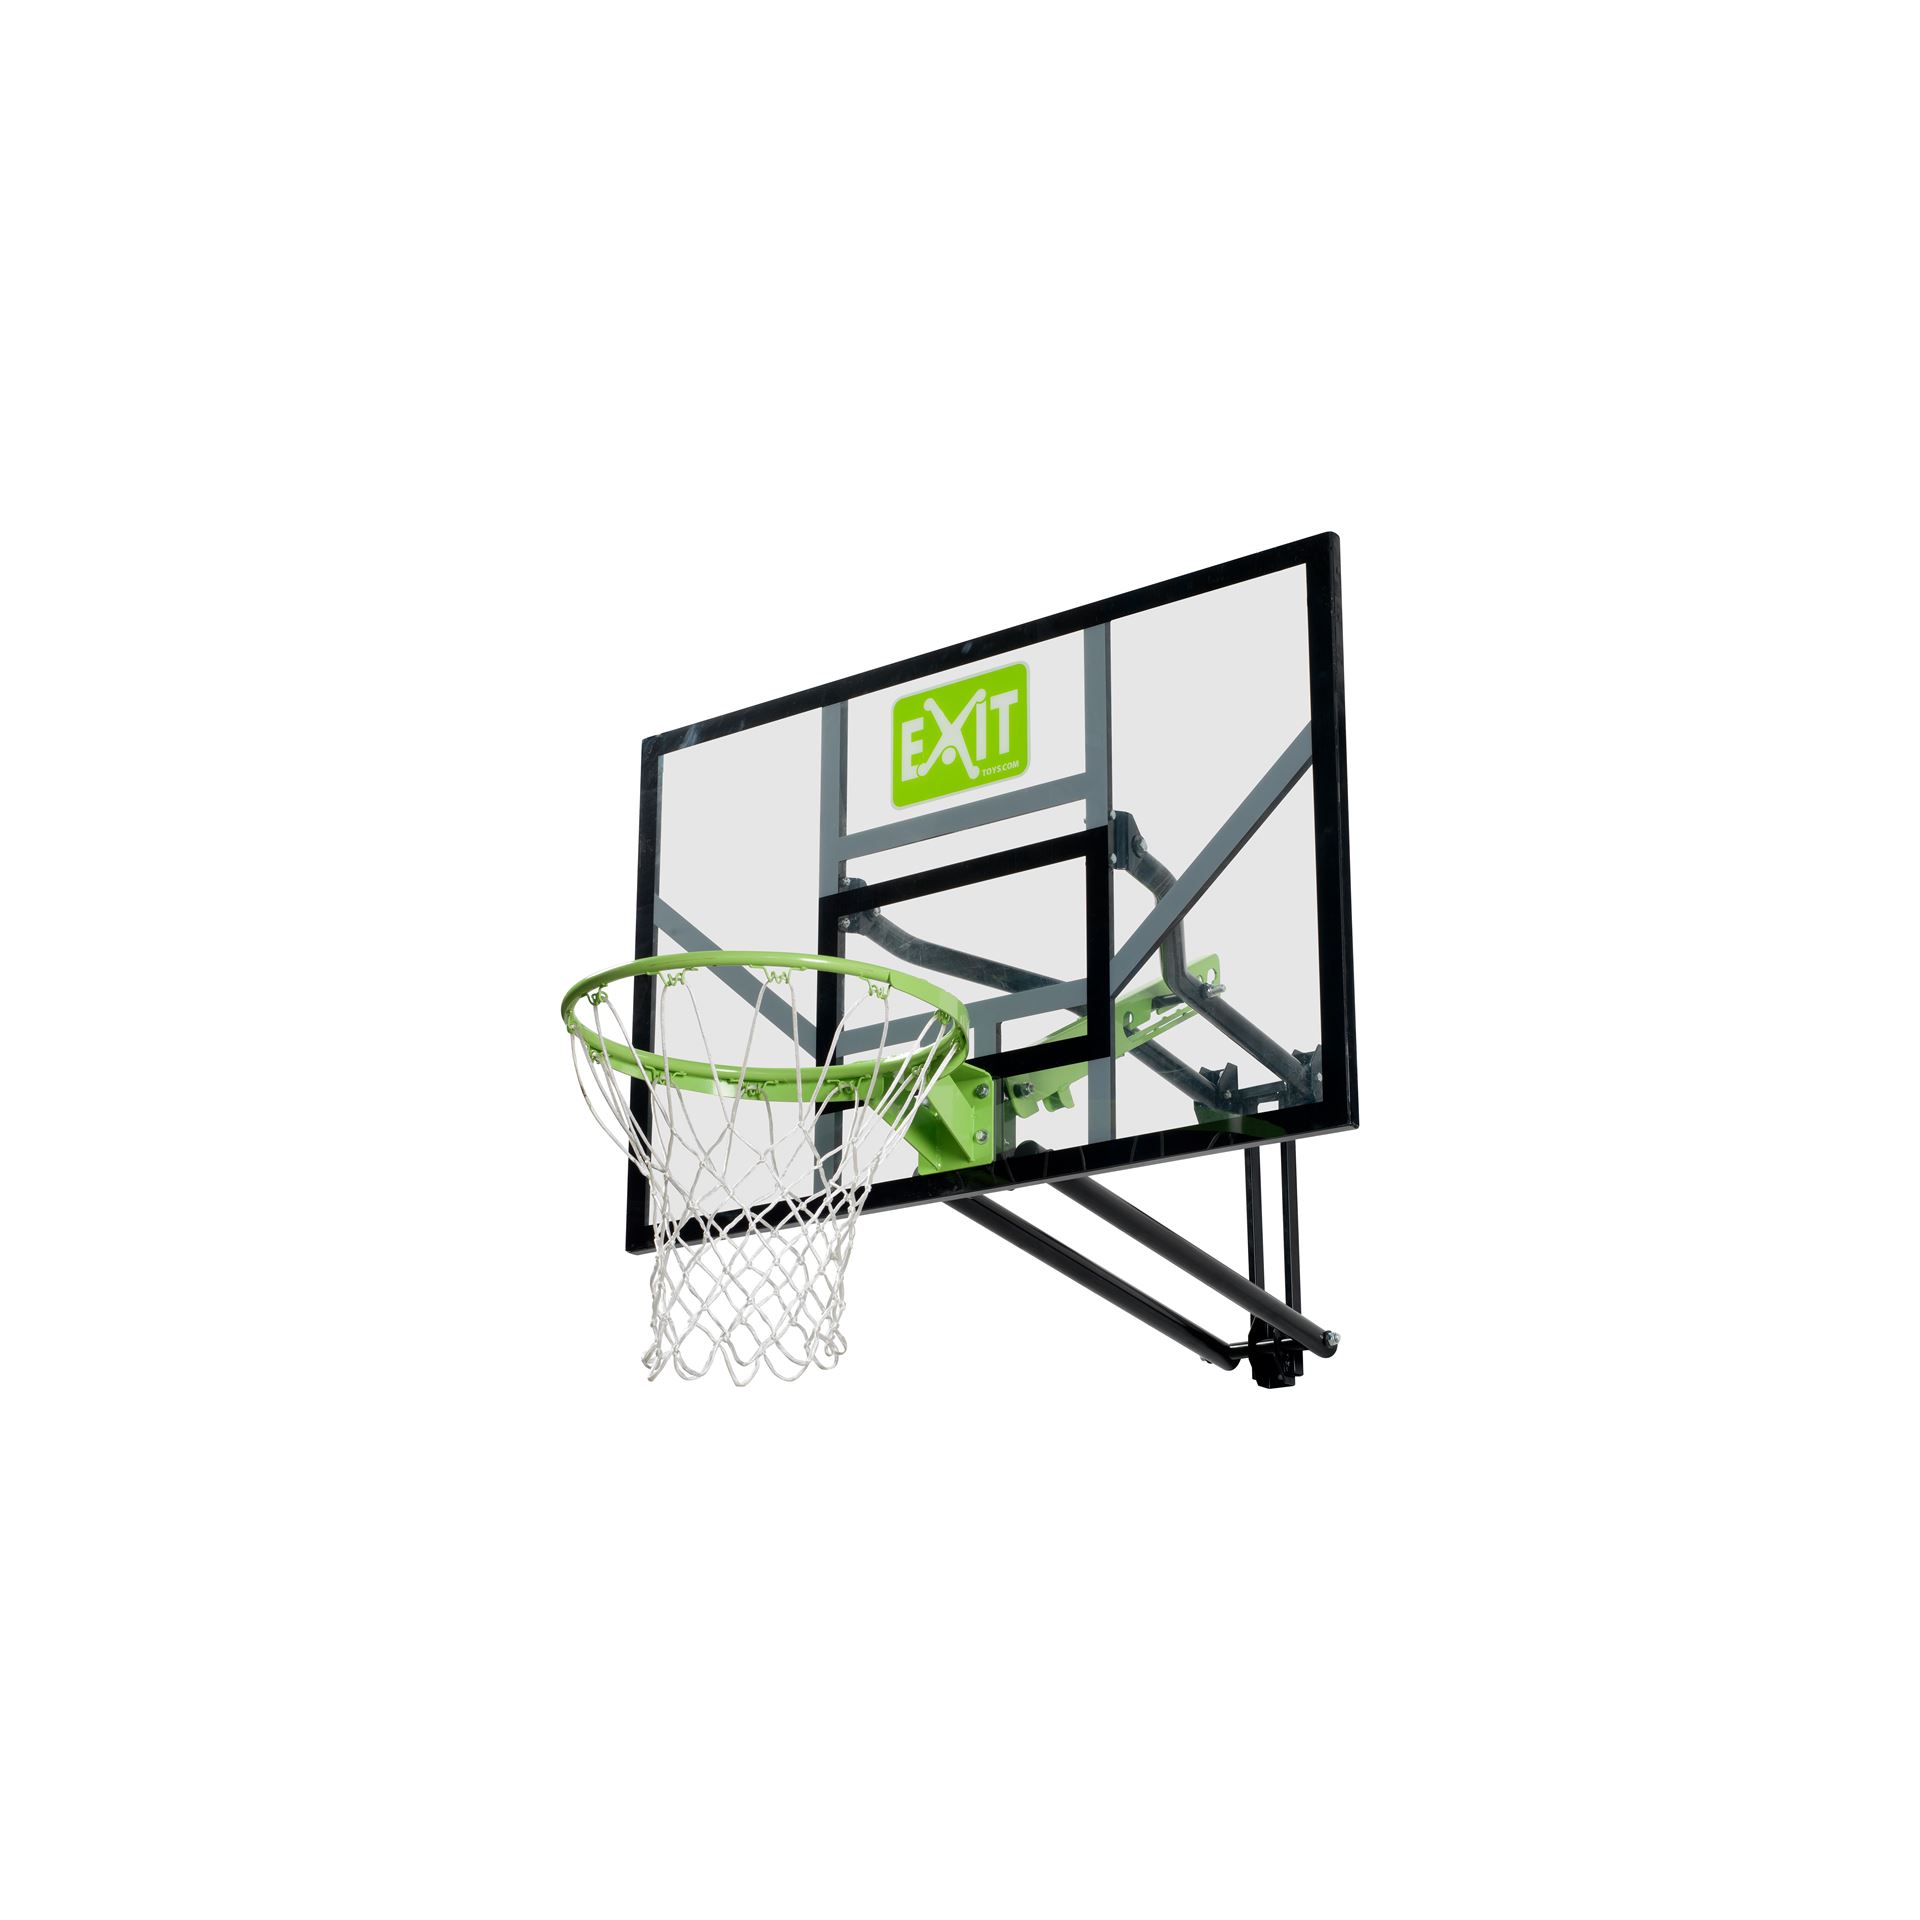 EXIT-Galaxy-basketbalbord-voor-muurmontage-groen-zwart